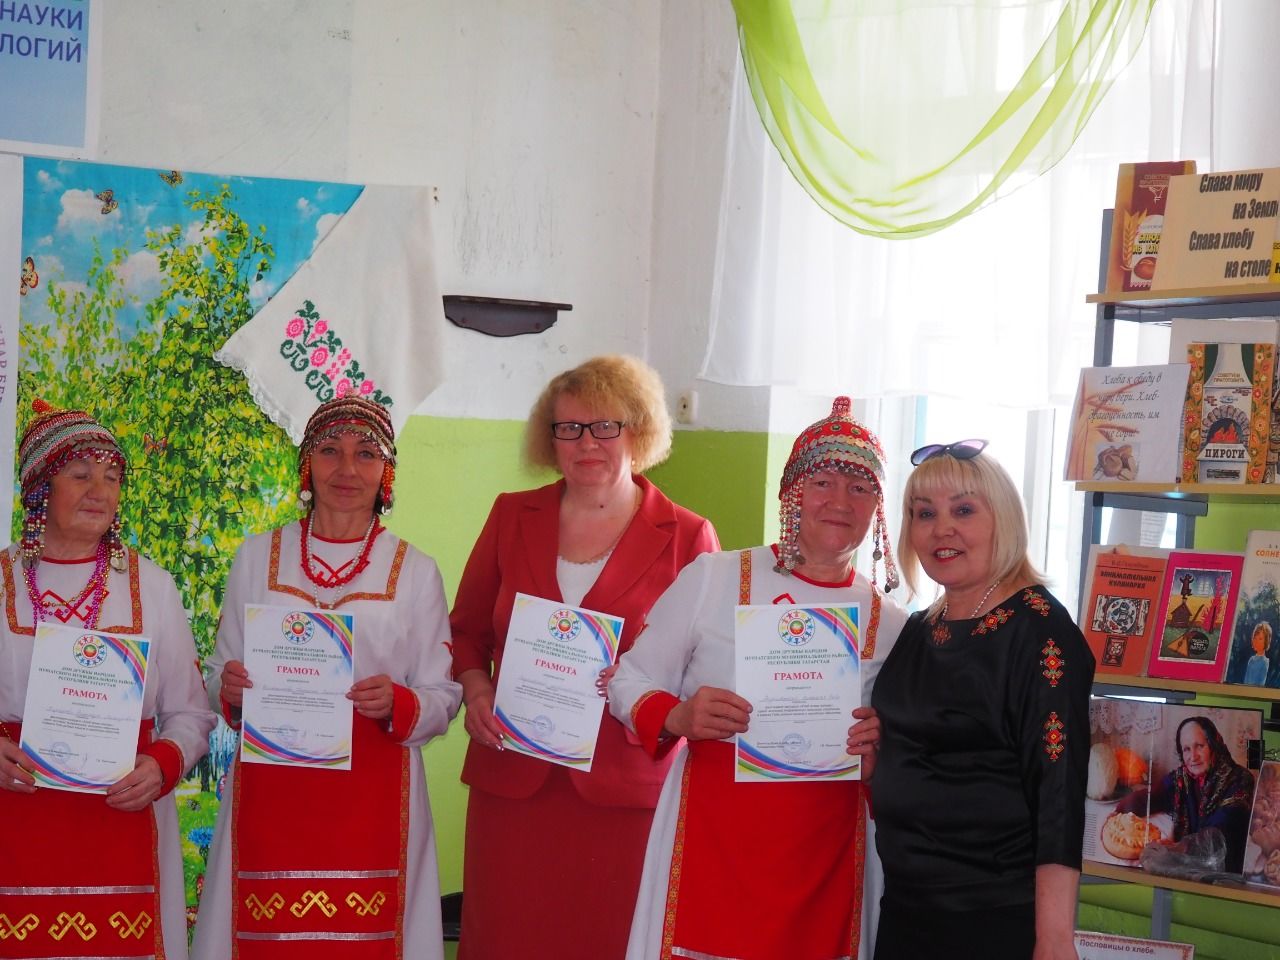 Старт новому проекту нурлатского Дома дружбы народов дали в Андреевке